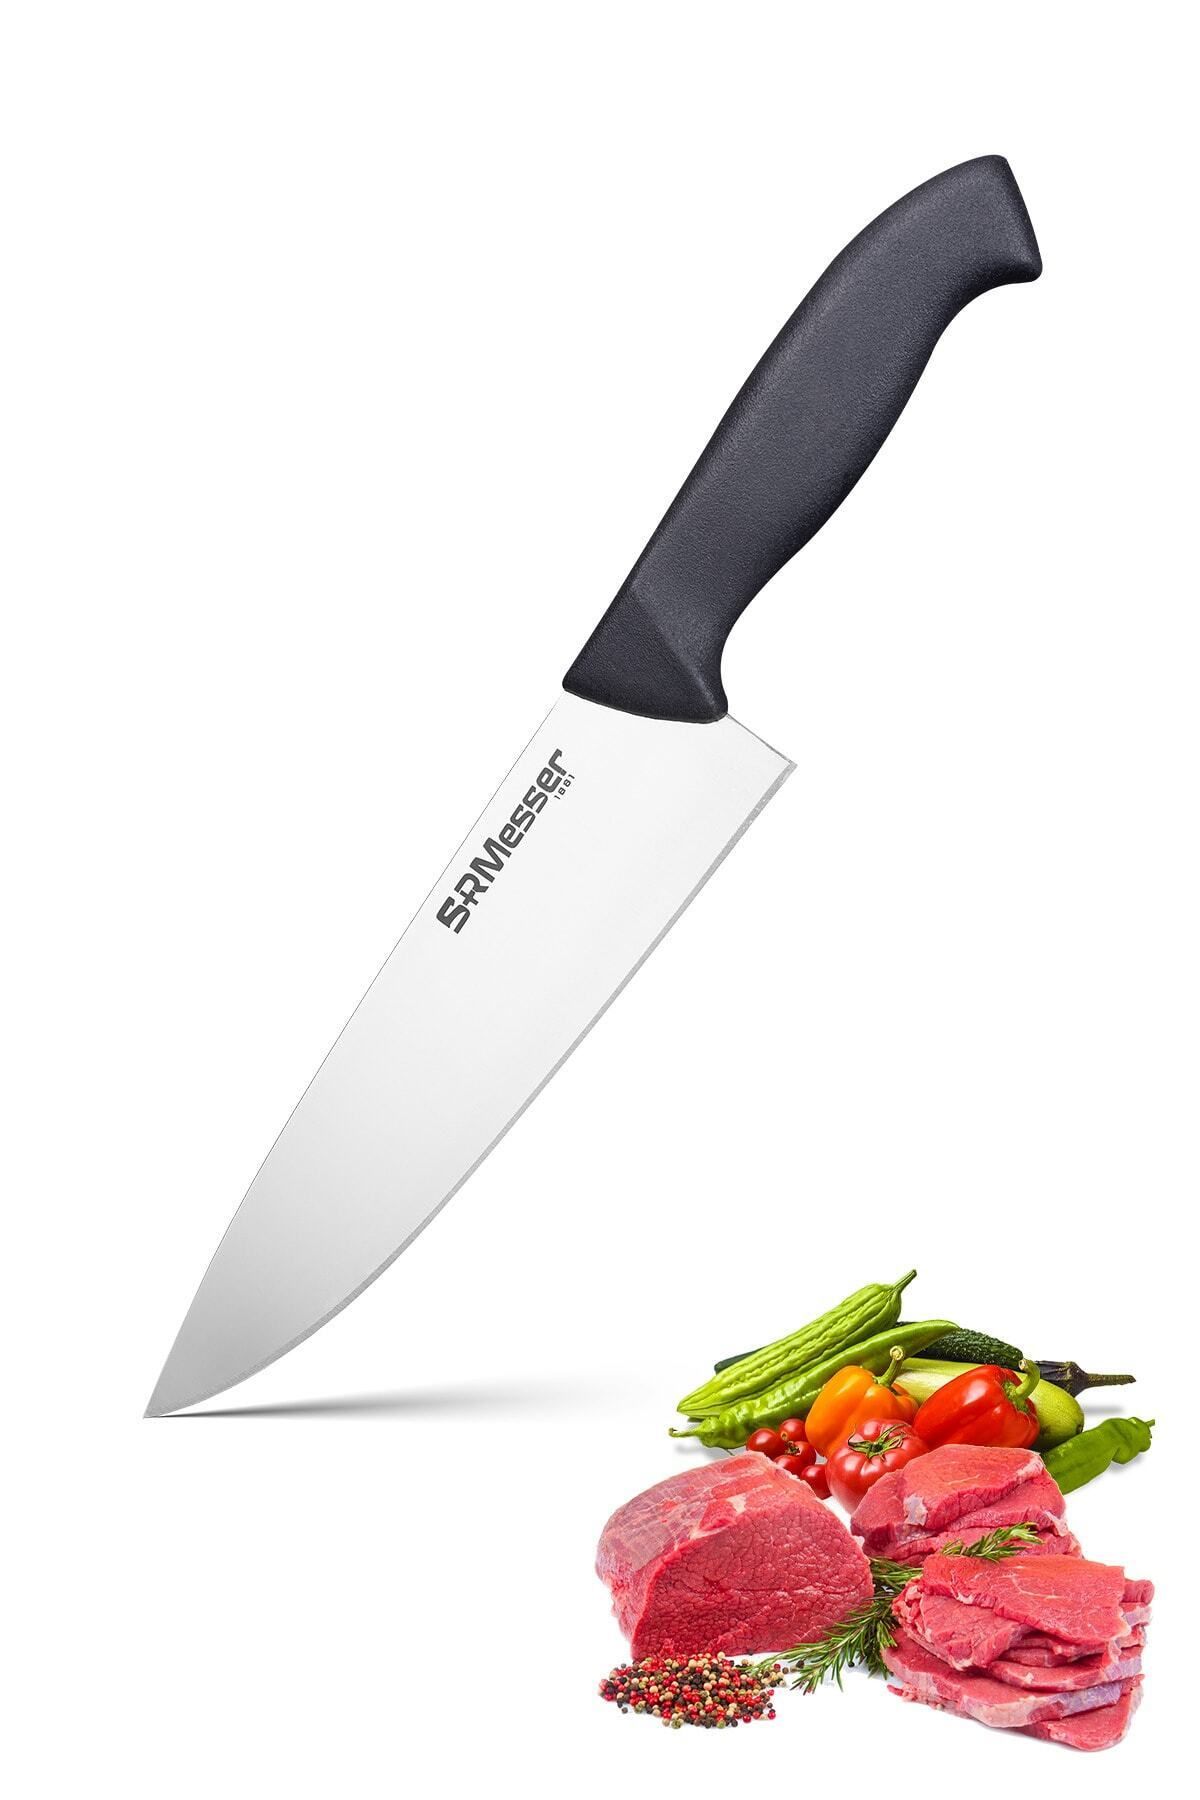 SRMesser 1881 Mutfak Şef Bıçağı 20 Cm Özel Ürün Profesyonel Bıçak